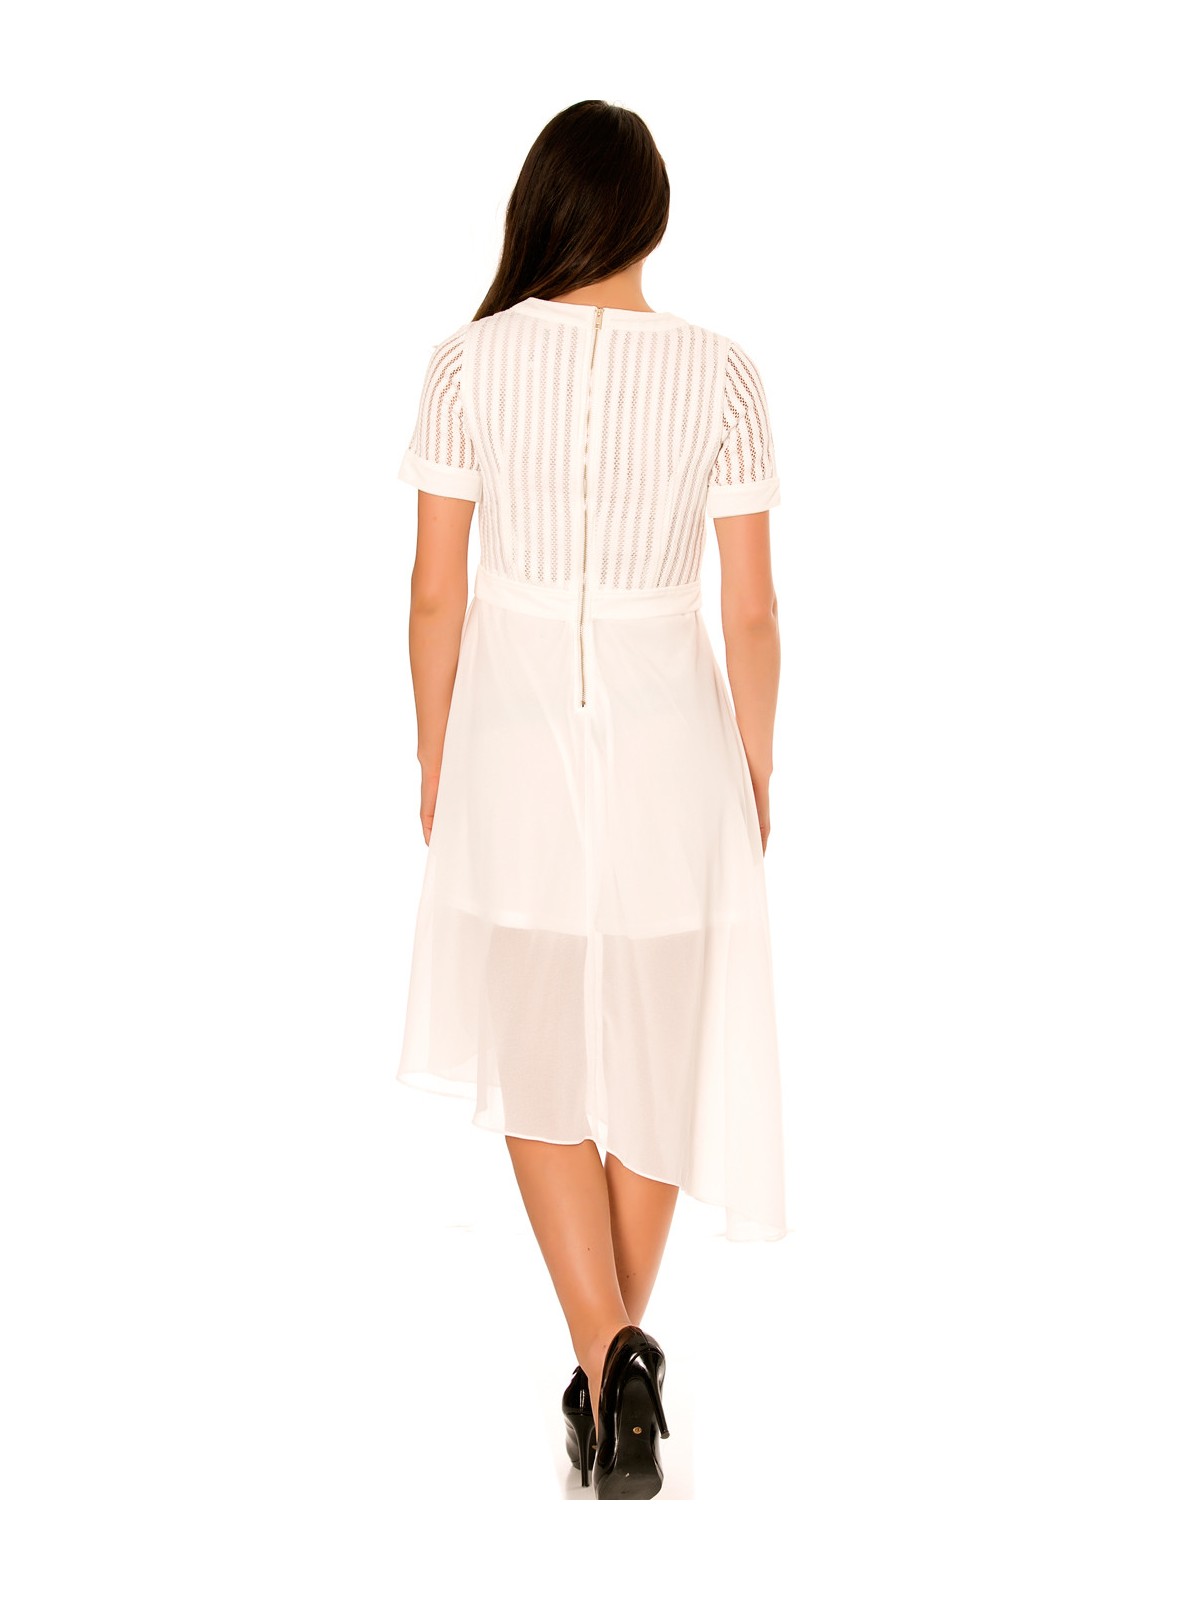 Robe blanche asymétrique et bi matière. Haut à trou et jupe en voilage. F6281 - 7